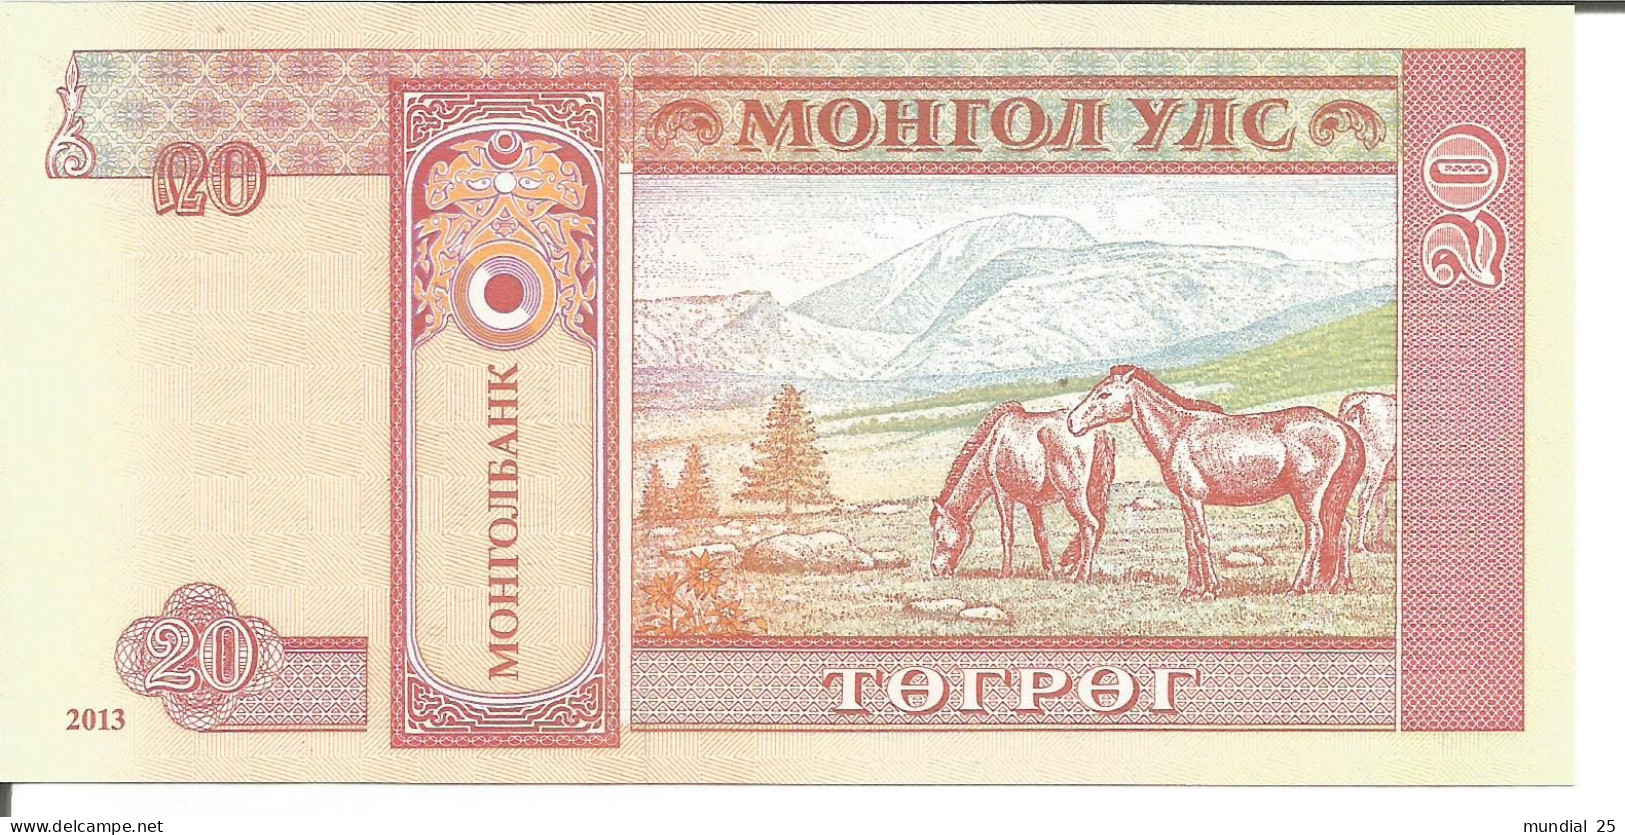 3 MONGOLIA NOTES 20 TUGRIK 2013 - Mongolie